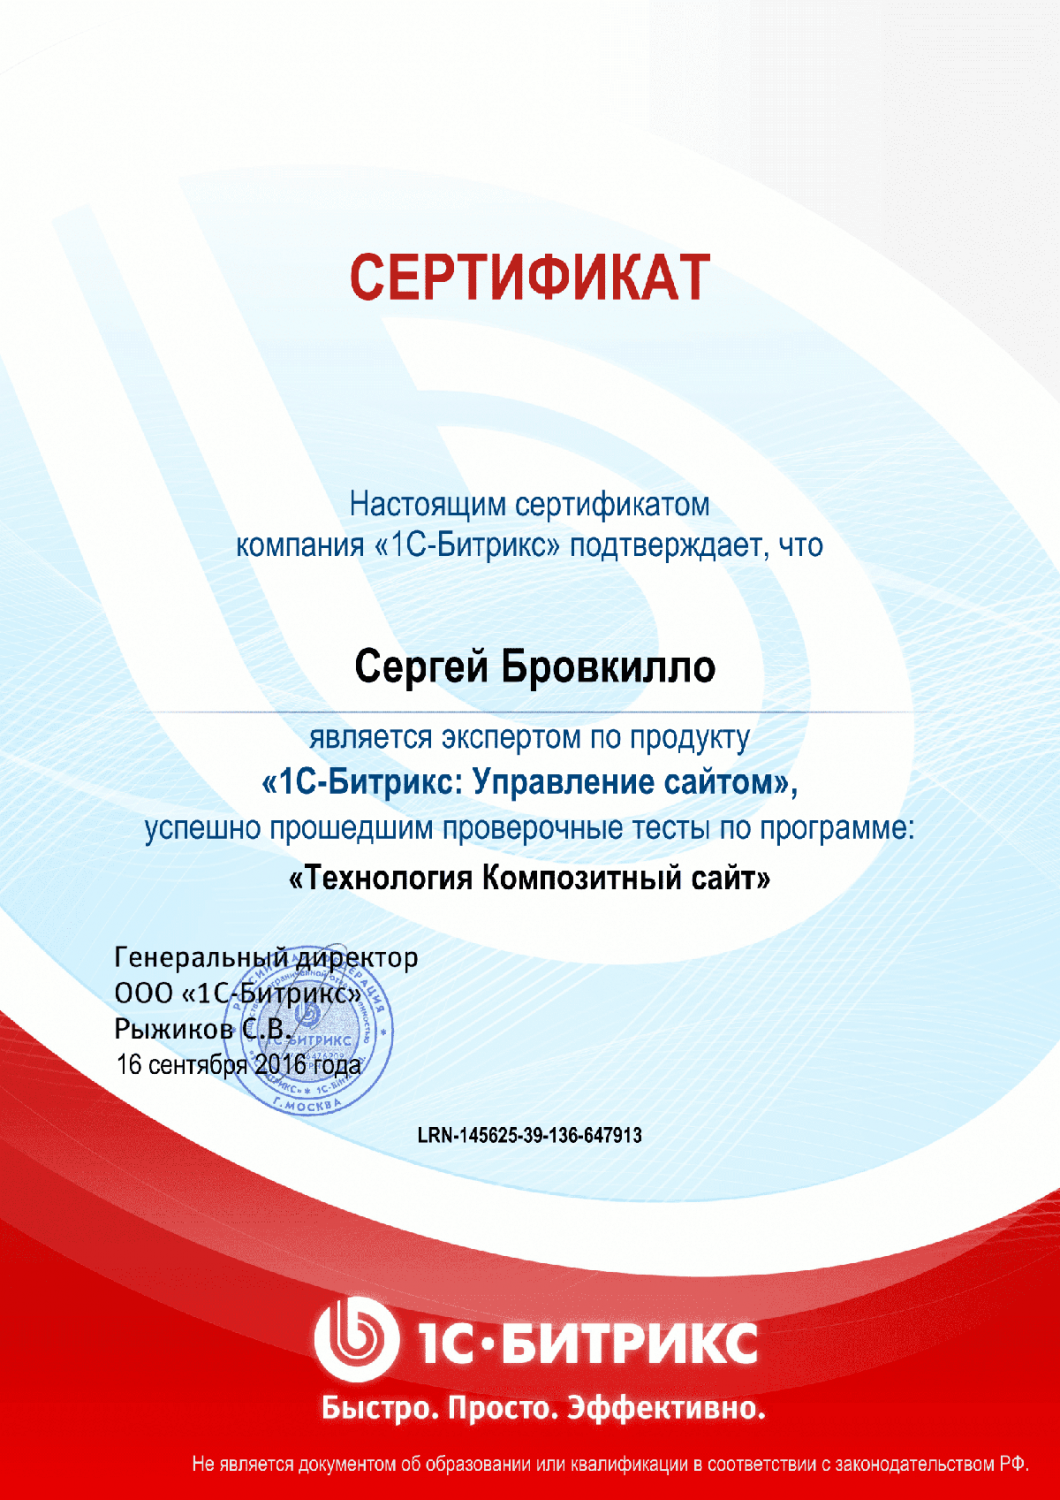 Сертификат "Технология Композитный сайт" в Санкт-Петербурга